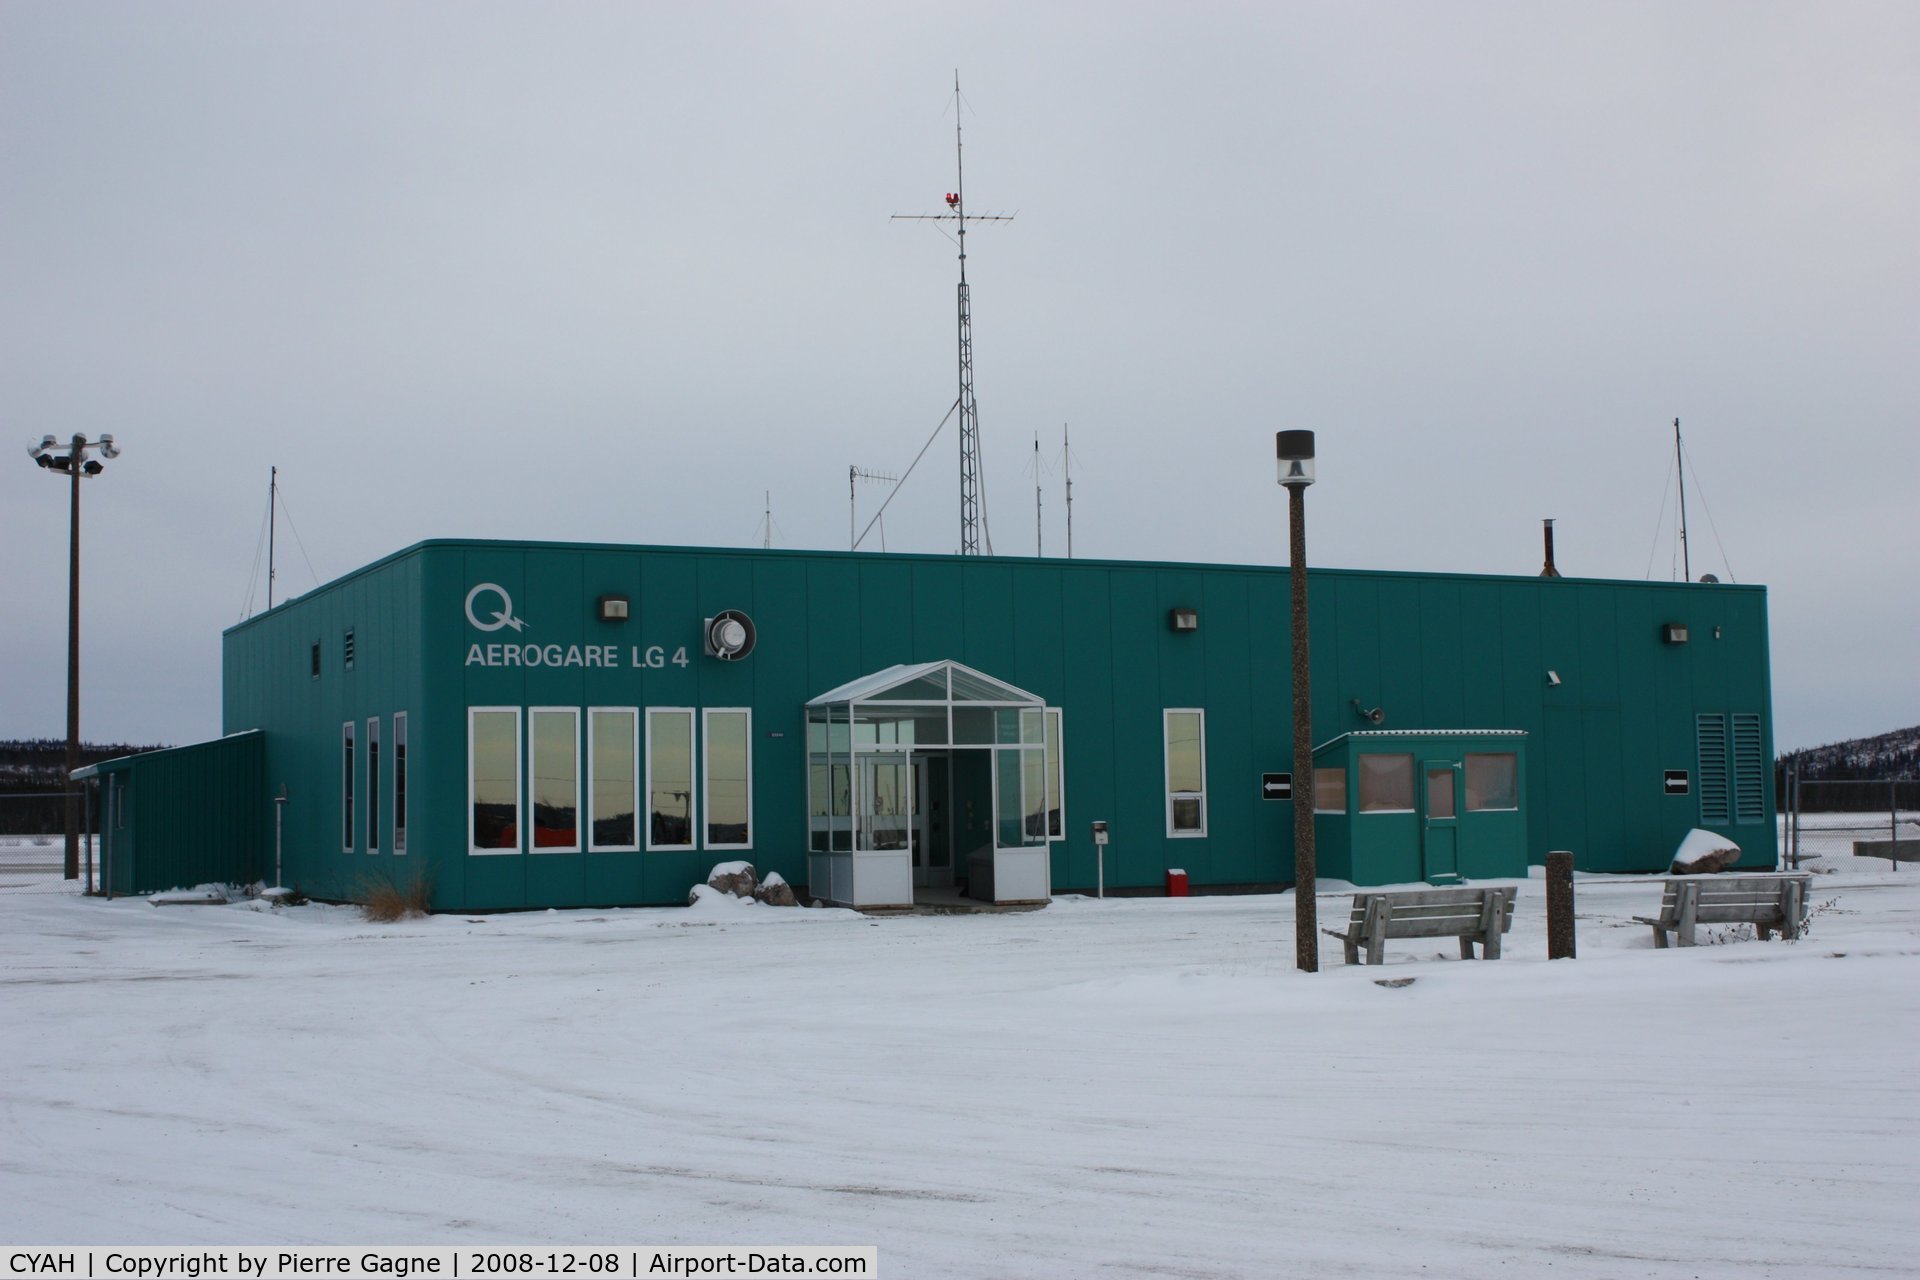 La Grande-4 Airport, La Grande-4 generating station, Quebec Canada (CYAH) - CYAH in winter